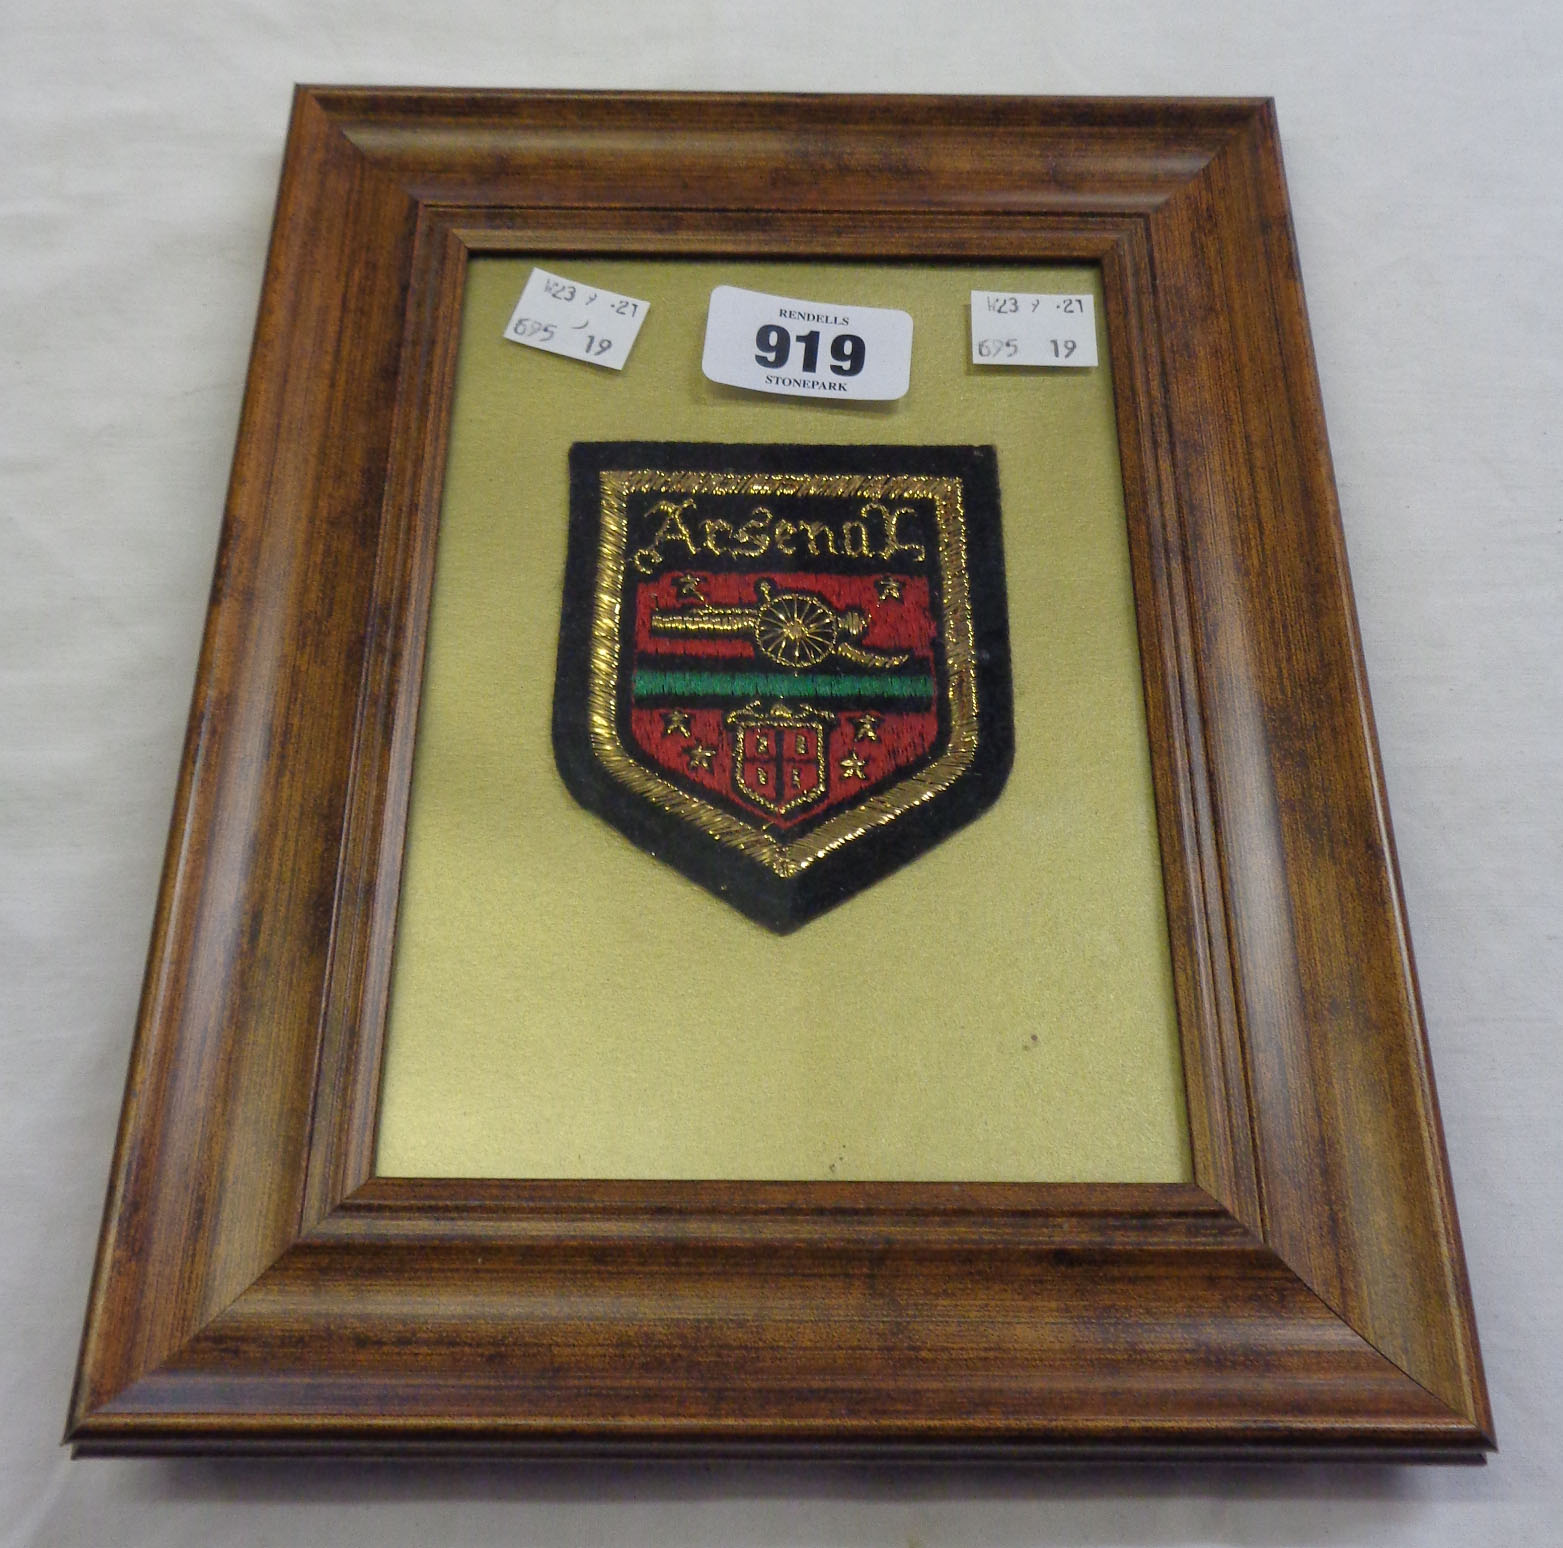 A framed 1971 Arsenal embroidered blazer badge